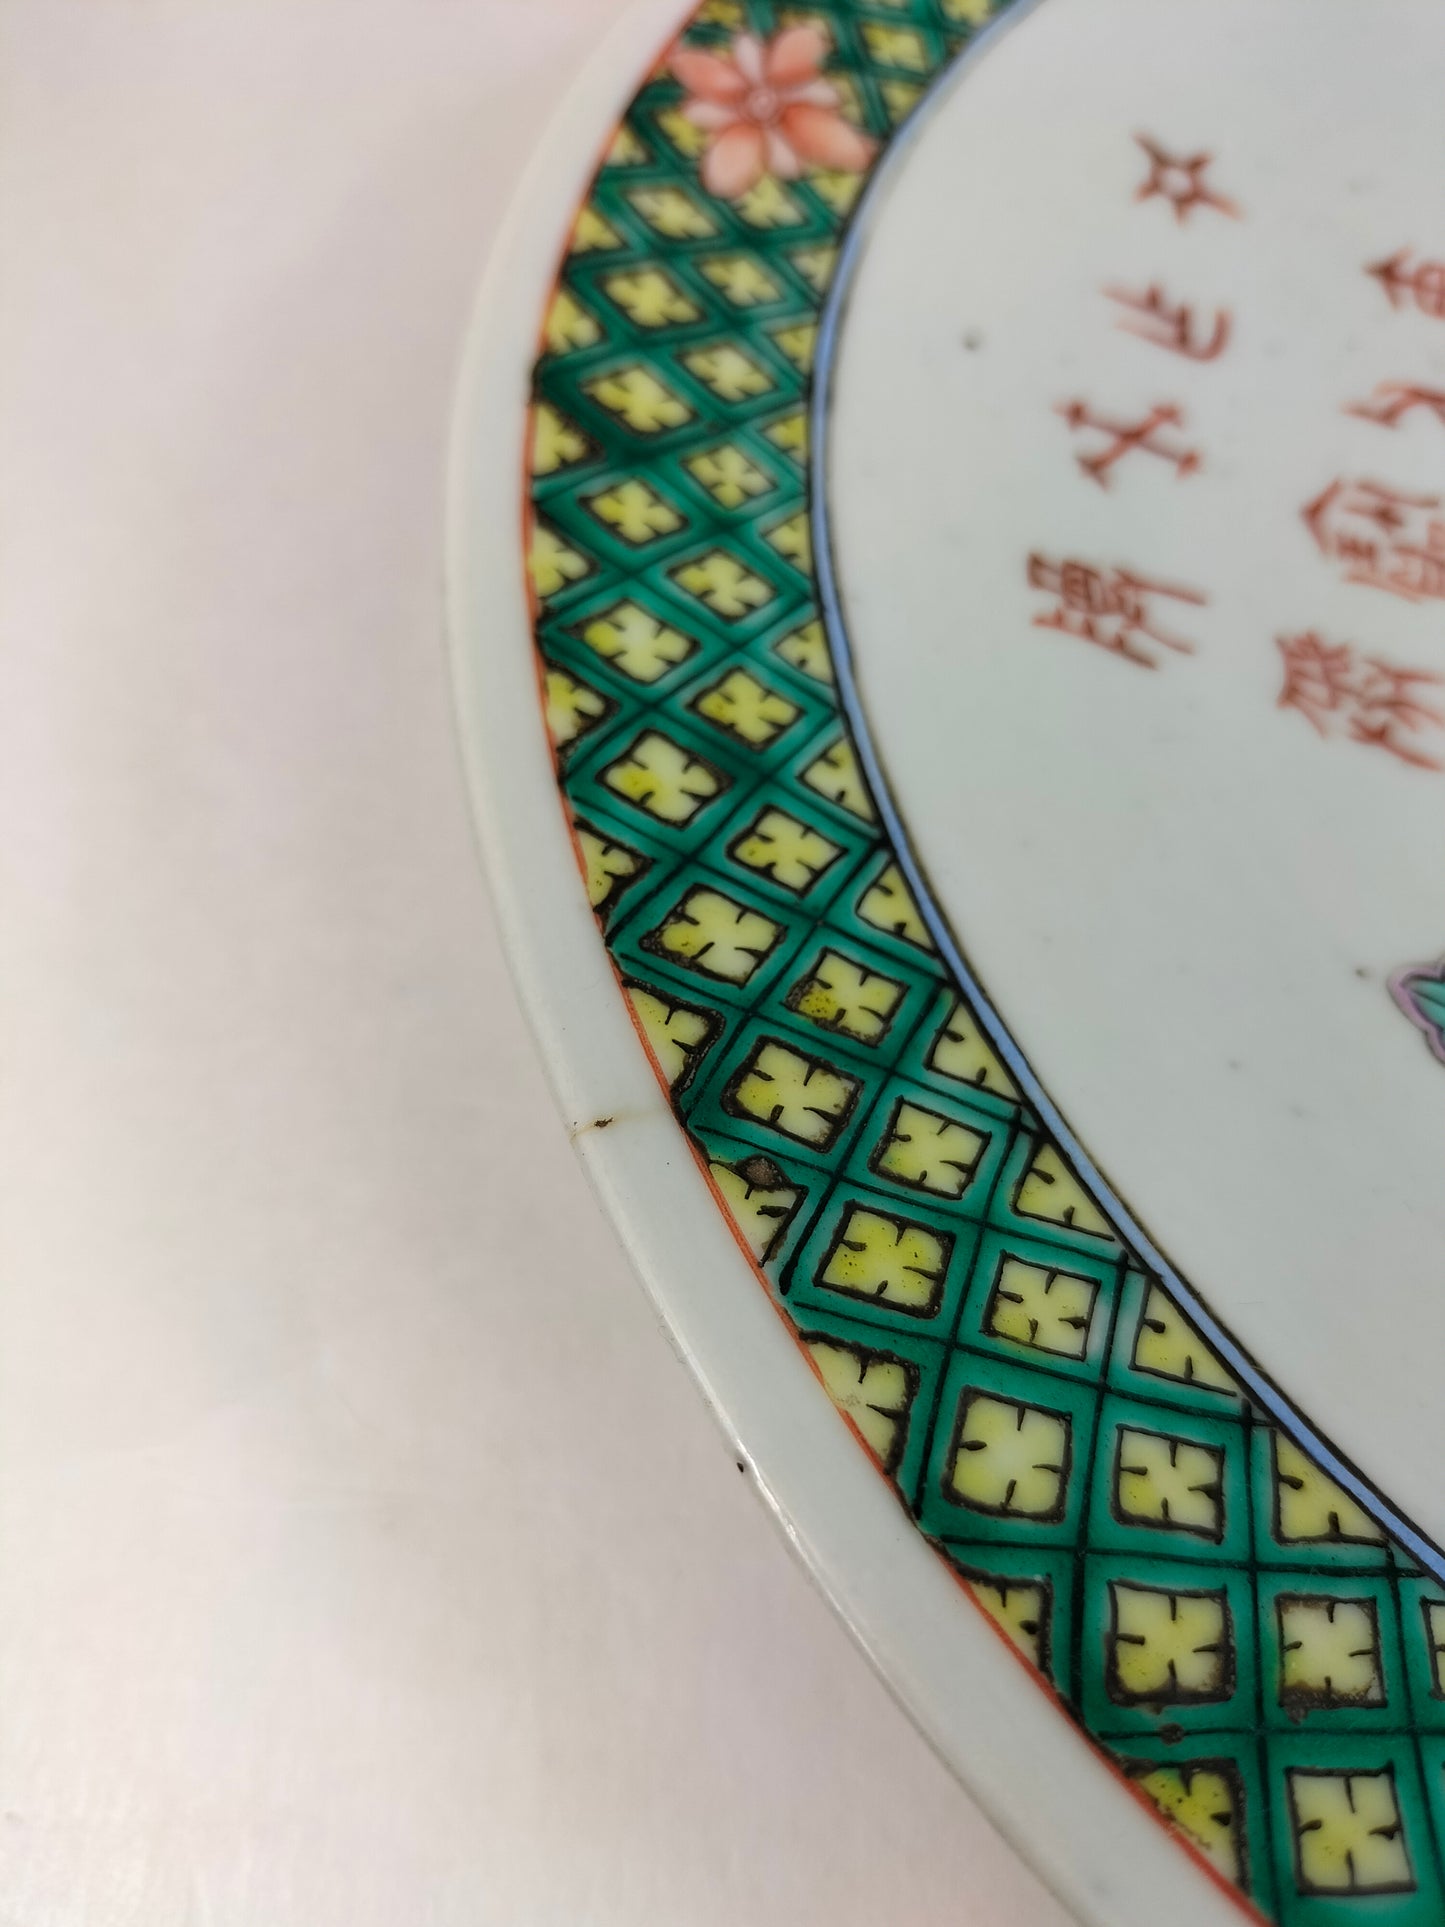 Pinggan Cina antik besar yang dihiasi dengan barang antik // Dinasti Qing - abad ke-19